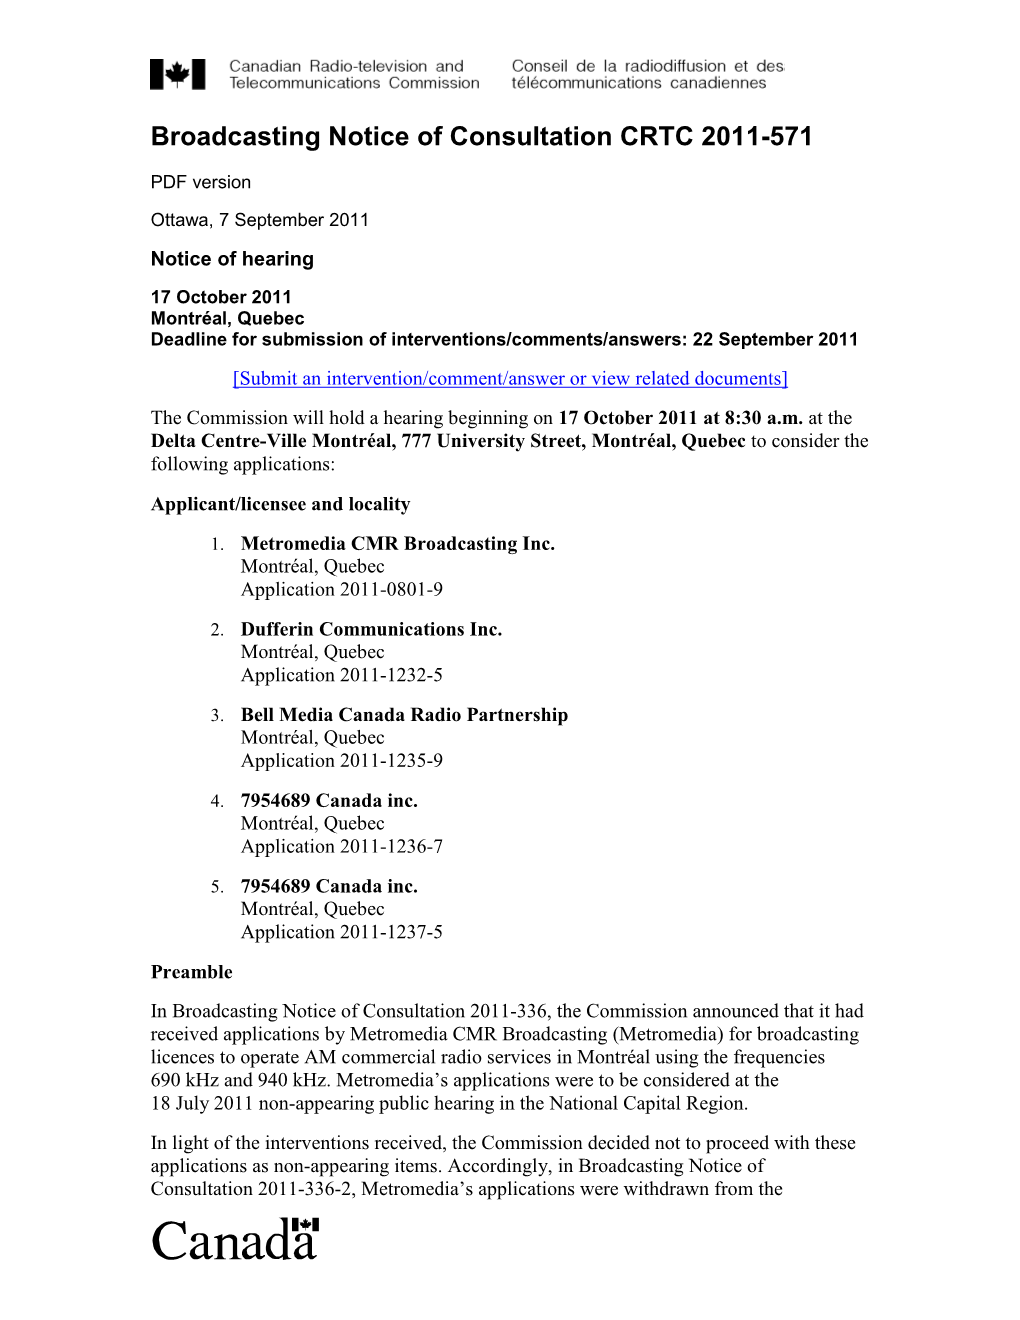 Broadcasting Notice of Consultation CRTC 2011-571